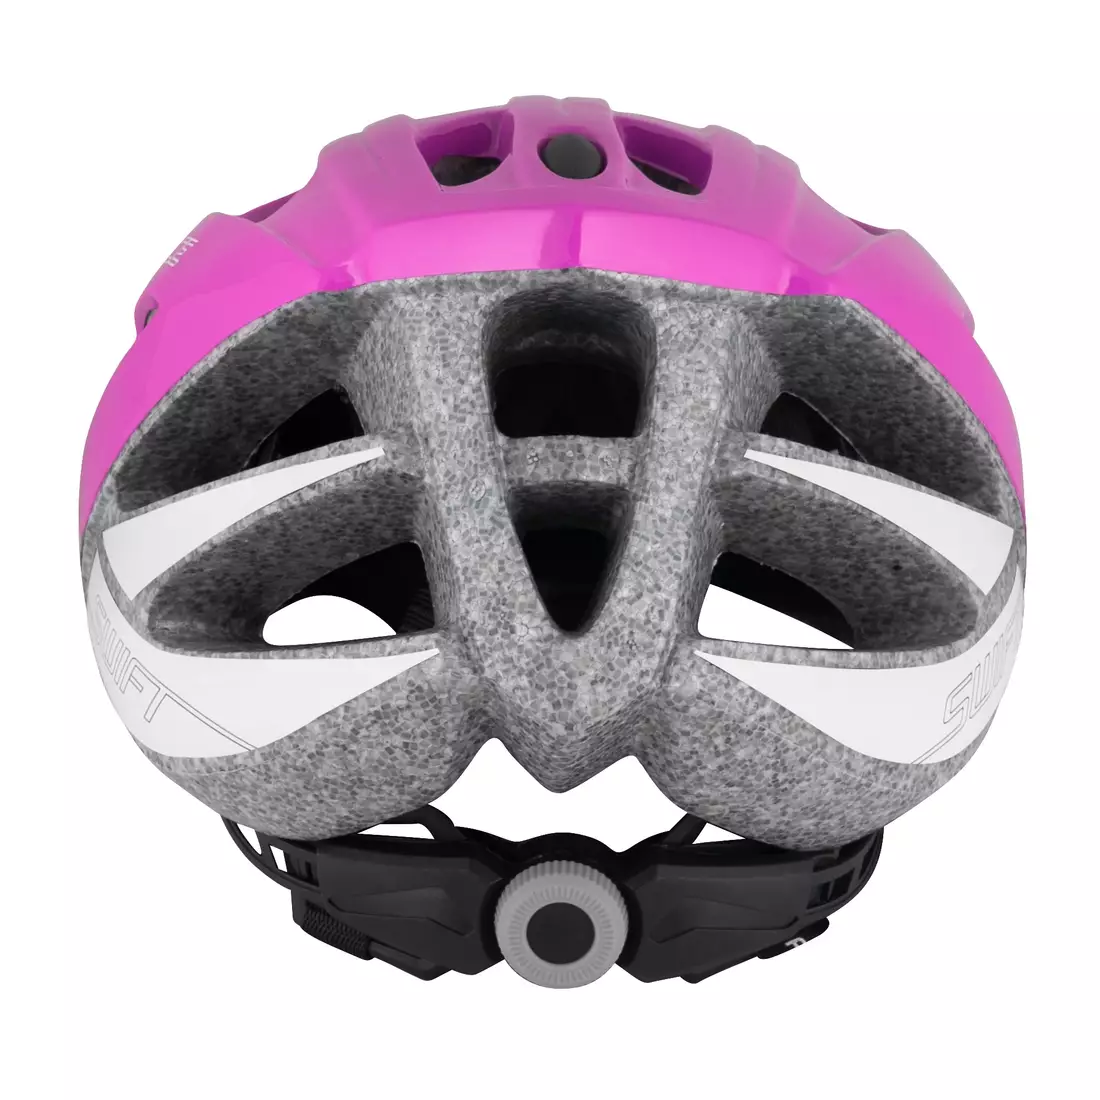 FORCE women's bicycle helmet SWIFT, pink 902902